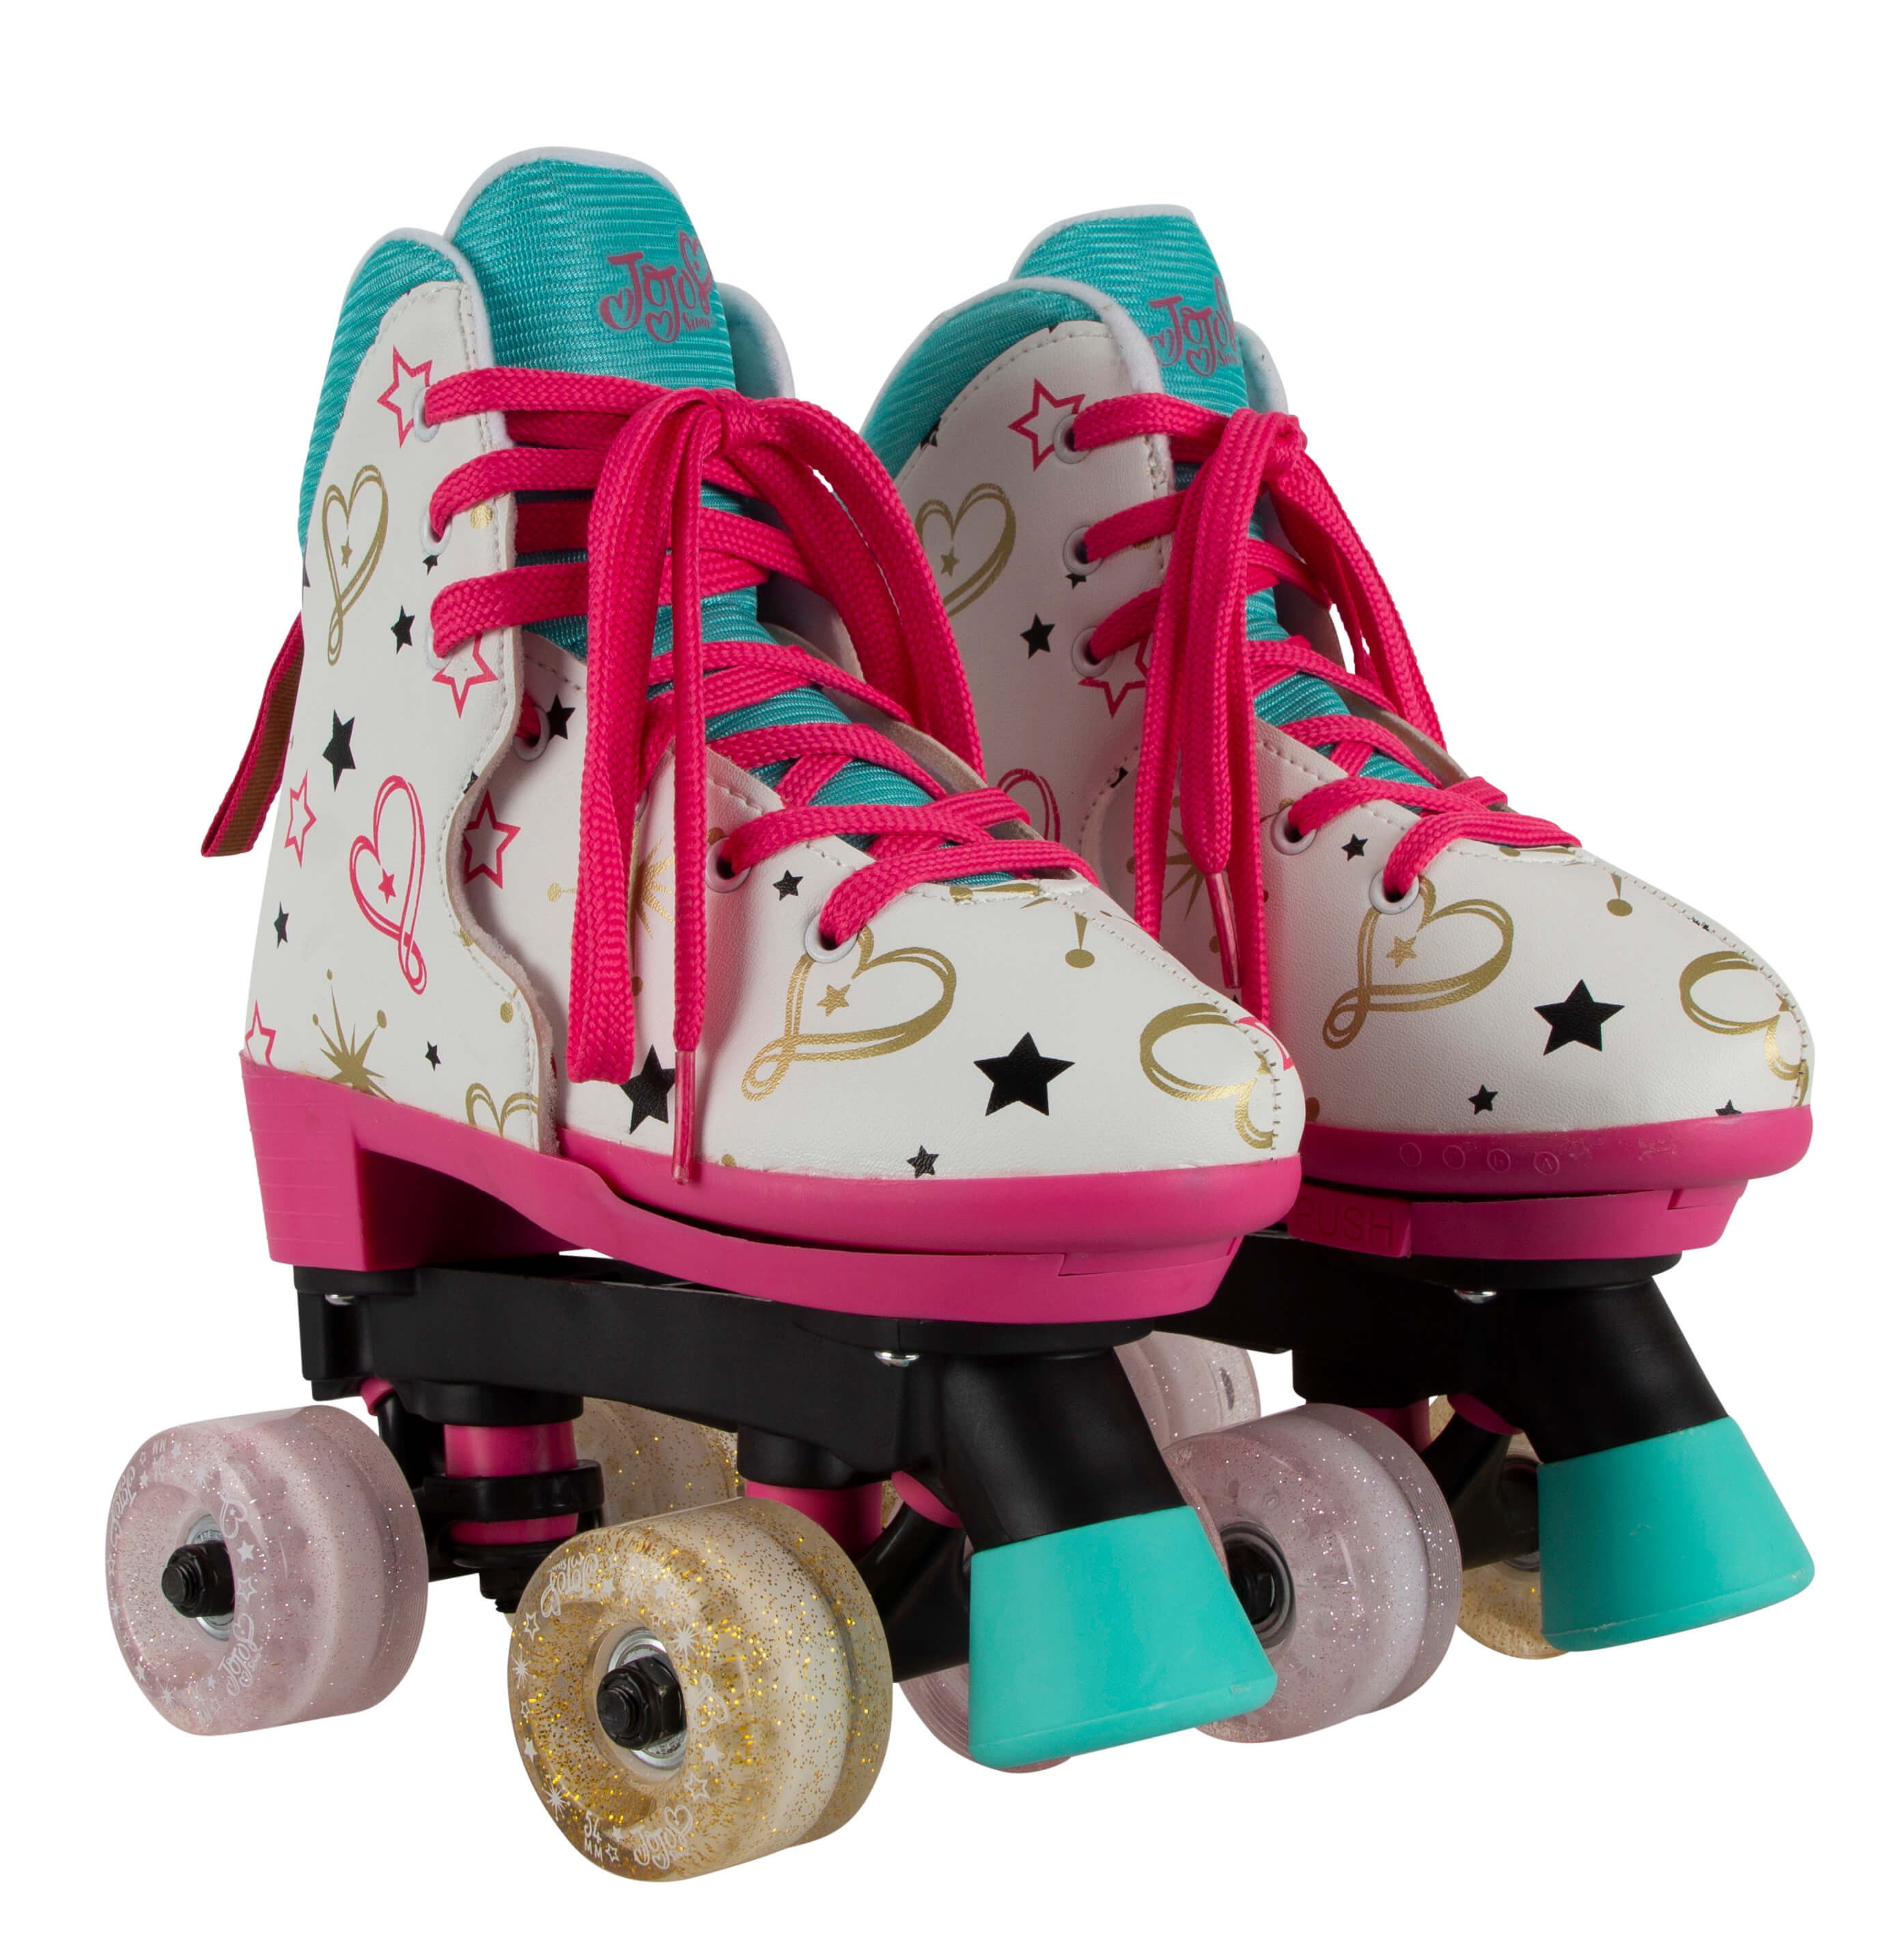 JoJo Siwa Roller Skates 